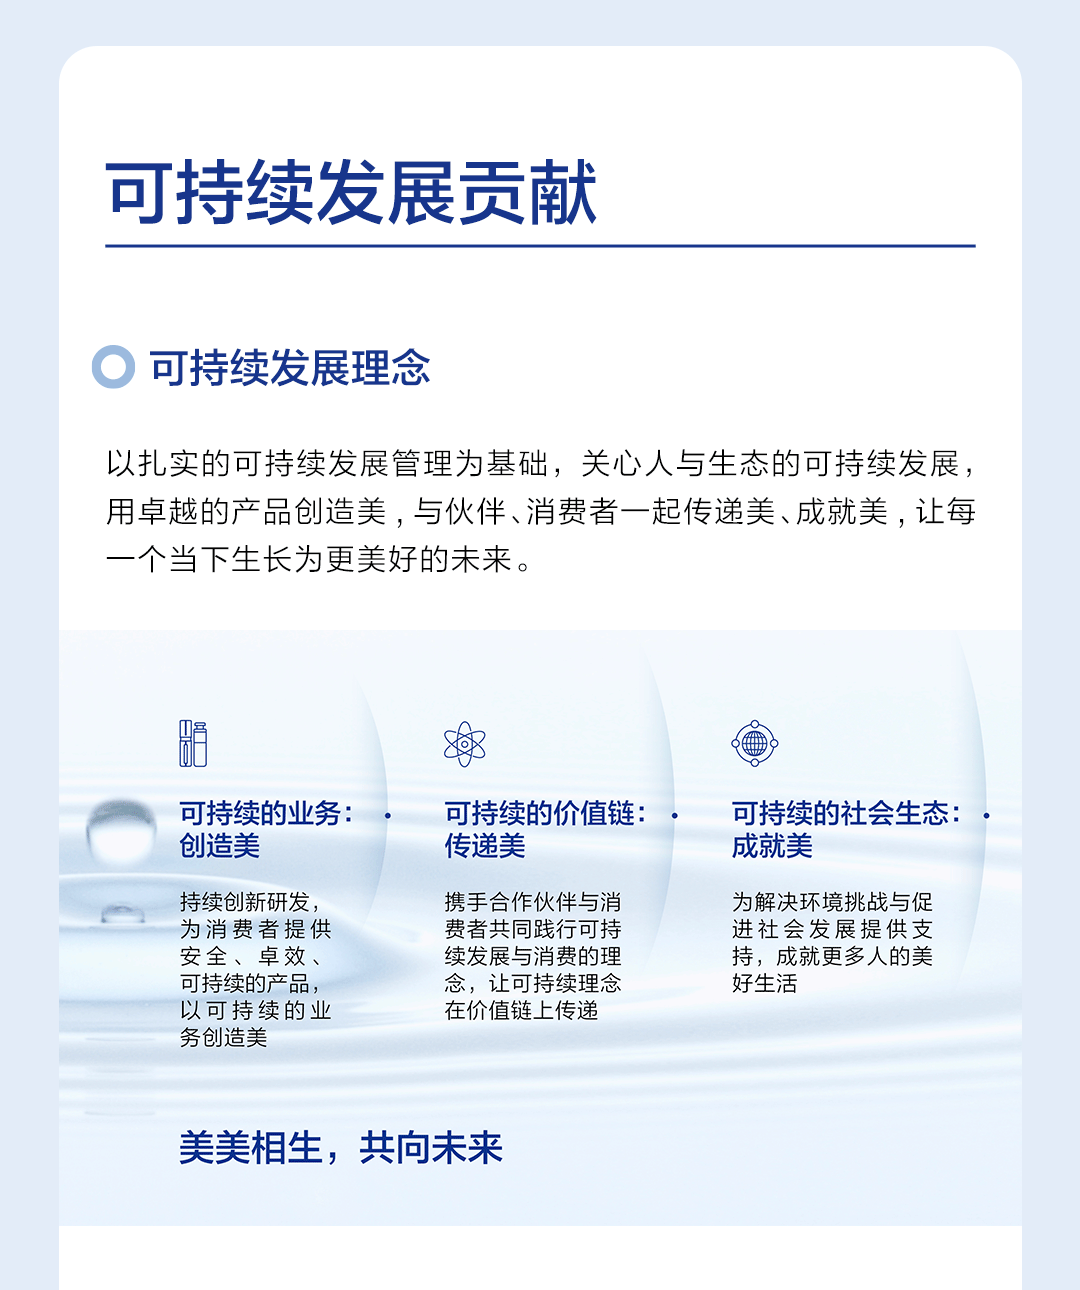 2022-ESG长图中文版发微博_03.gif